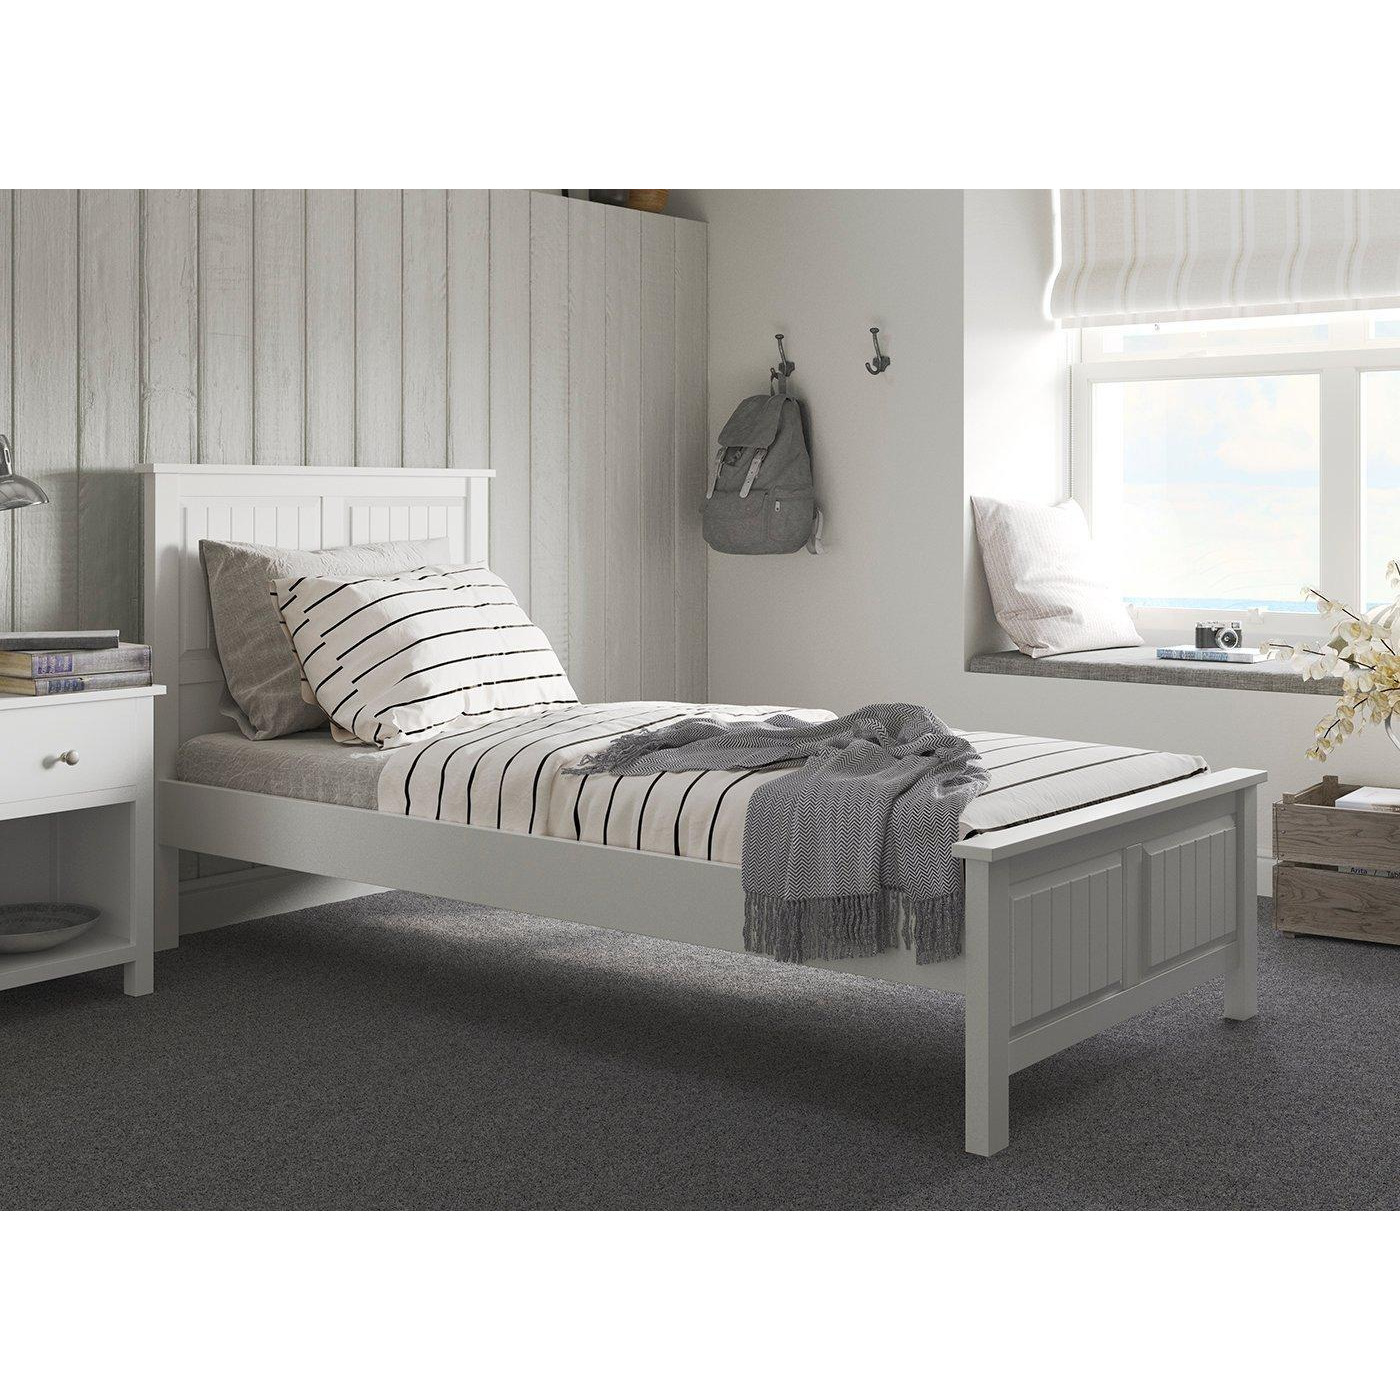 Woodbridge Wooden Bed Frame 3'0 Single White